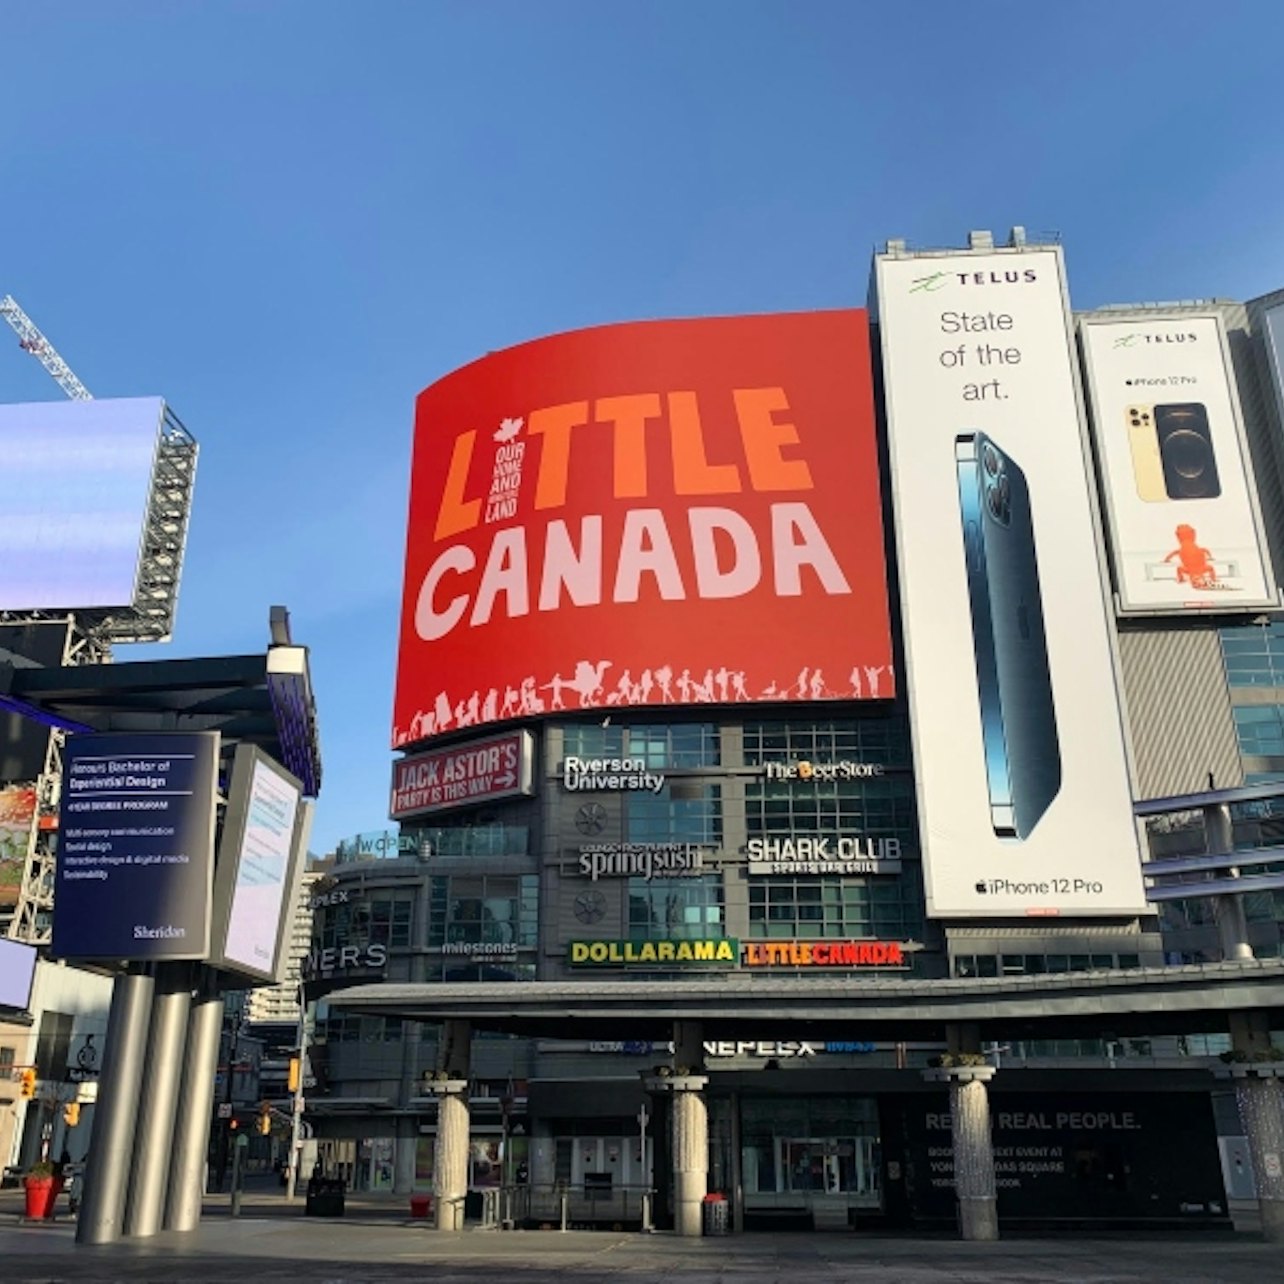 Pequeno Canadá Toronto: Pular a linha - Acomodações em Toronto